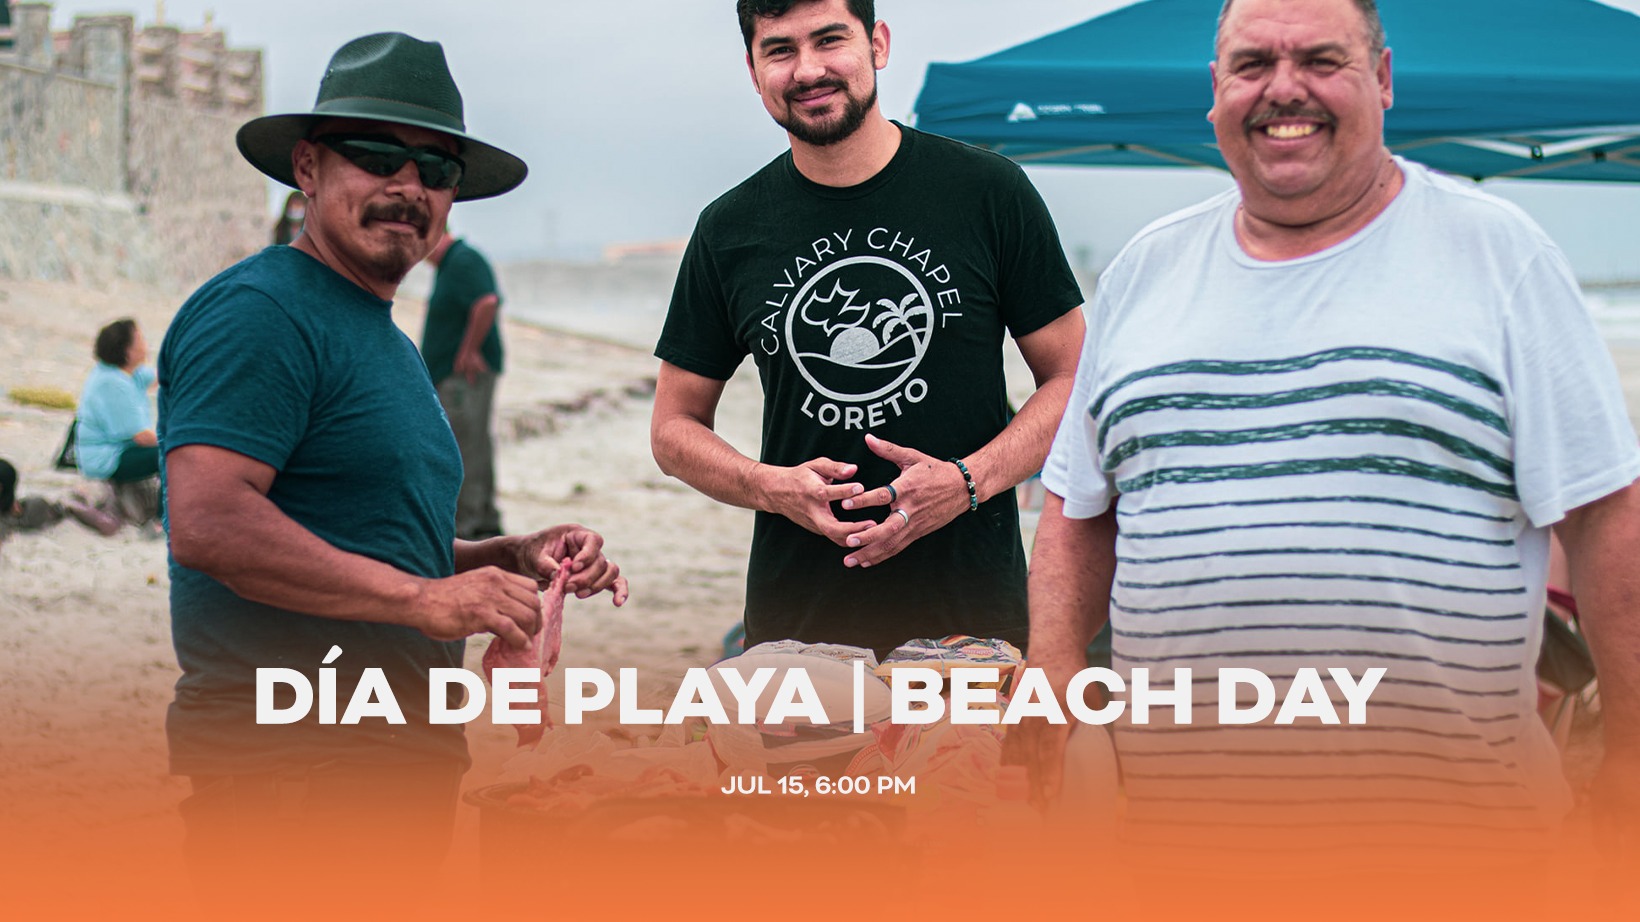 Beach Day – Dia de Playa